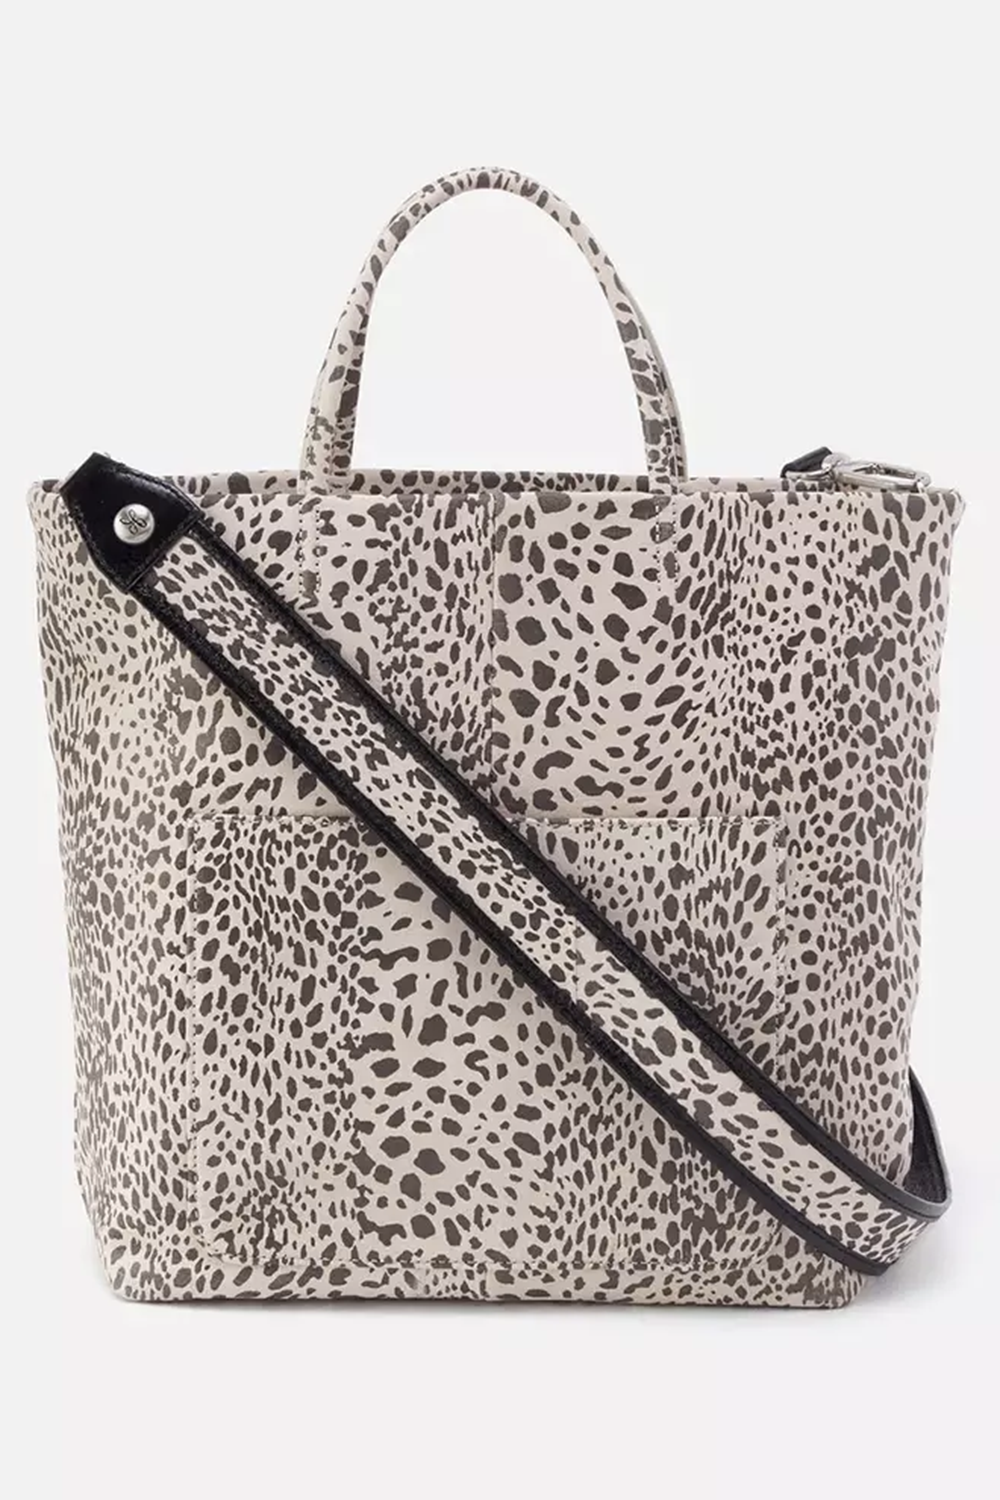 Leopard Print Tote Bag animal Cheetah Print Totes 